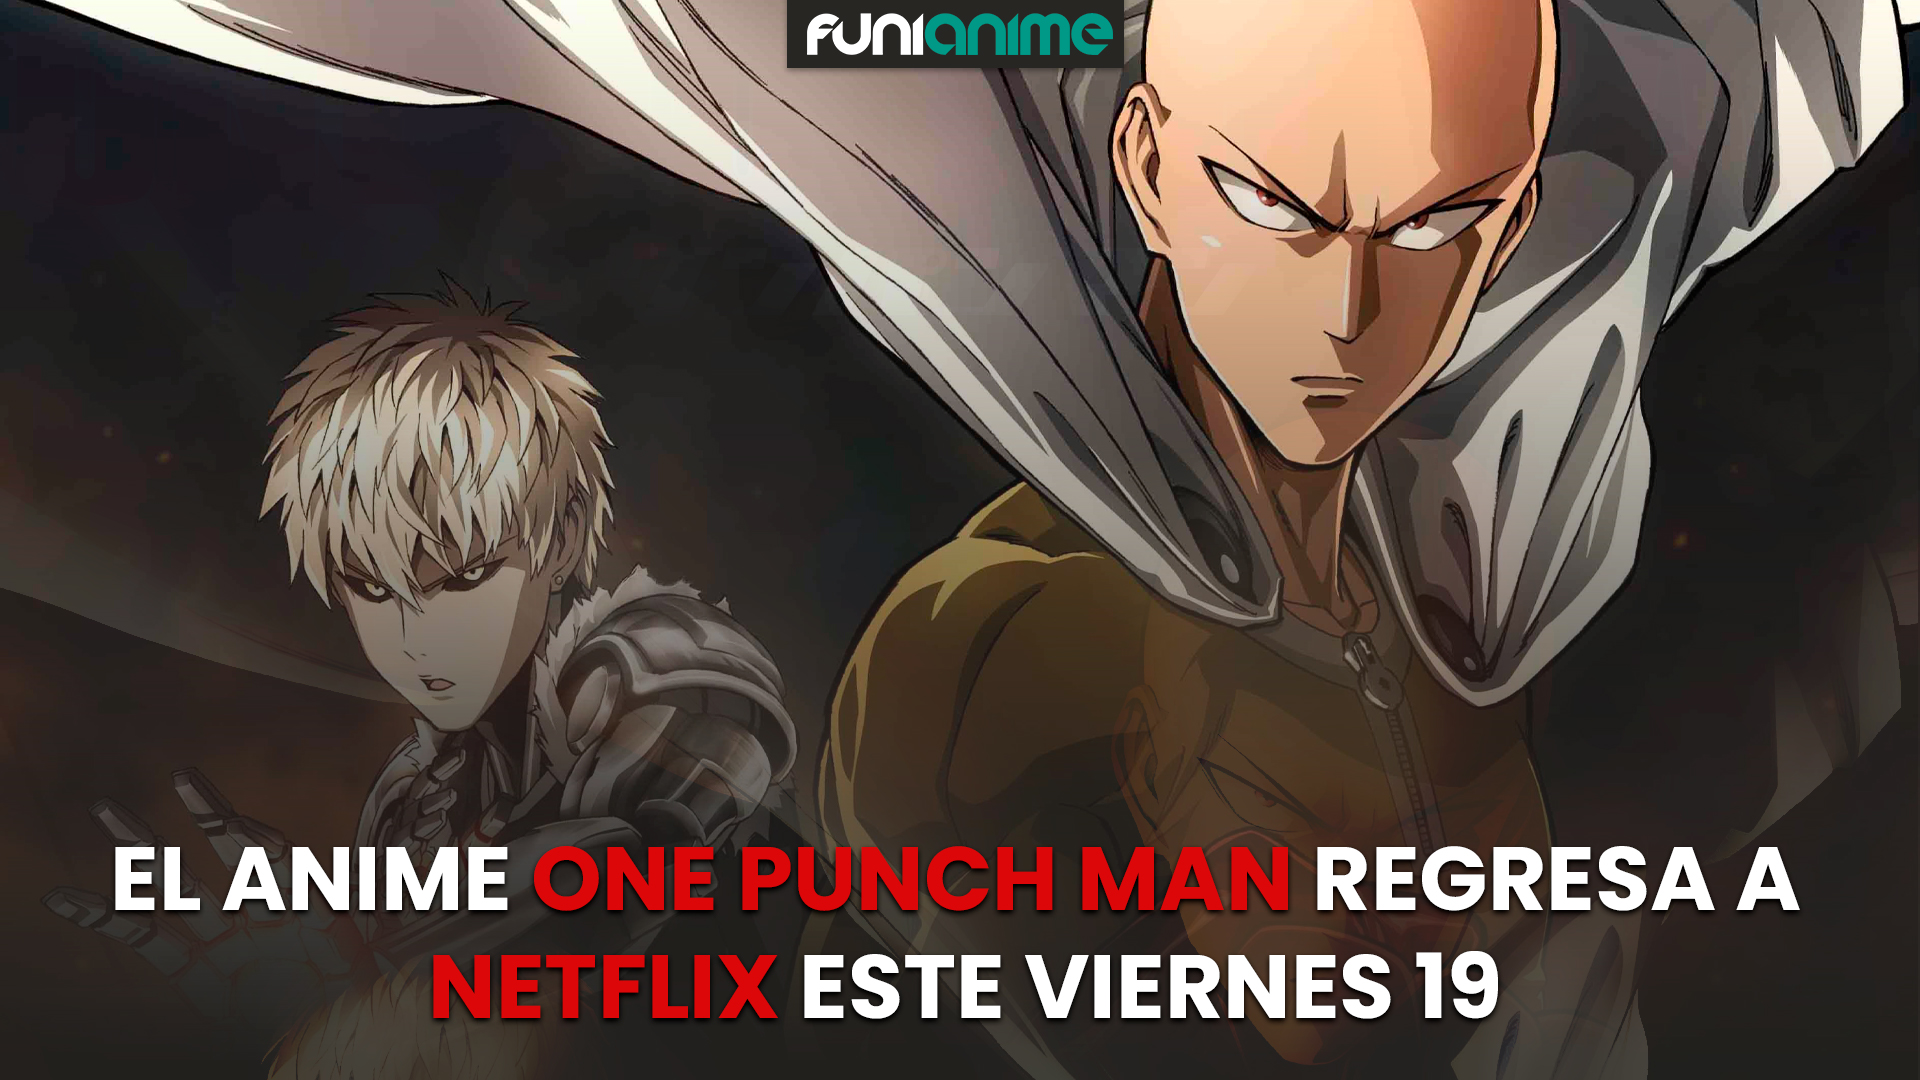 Porque One Punch Man 2 aún no está disponible en Netflix?